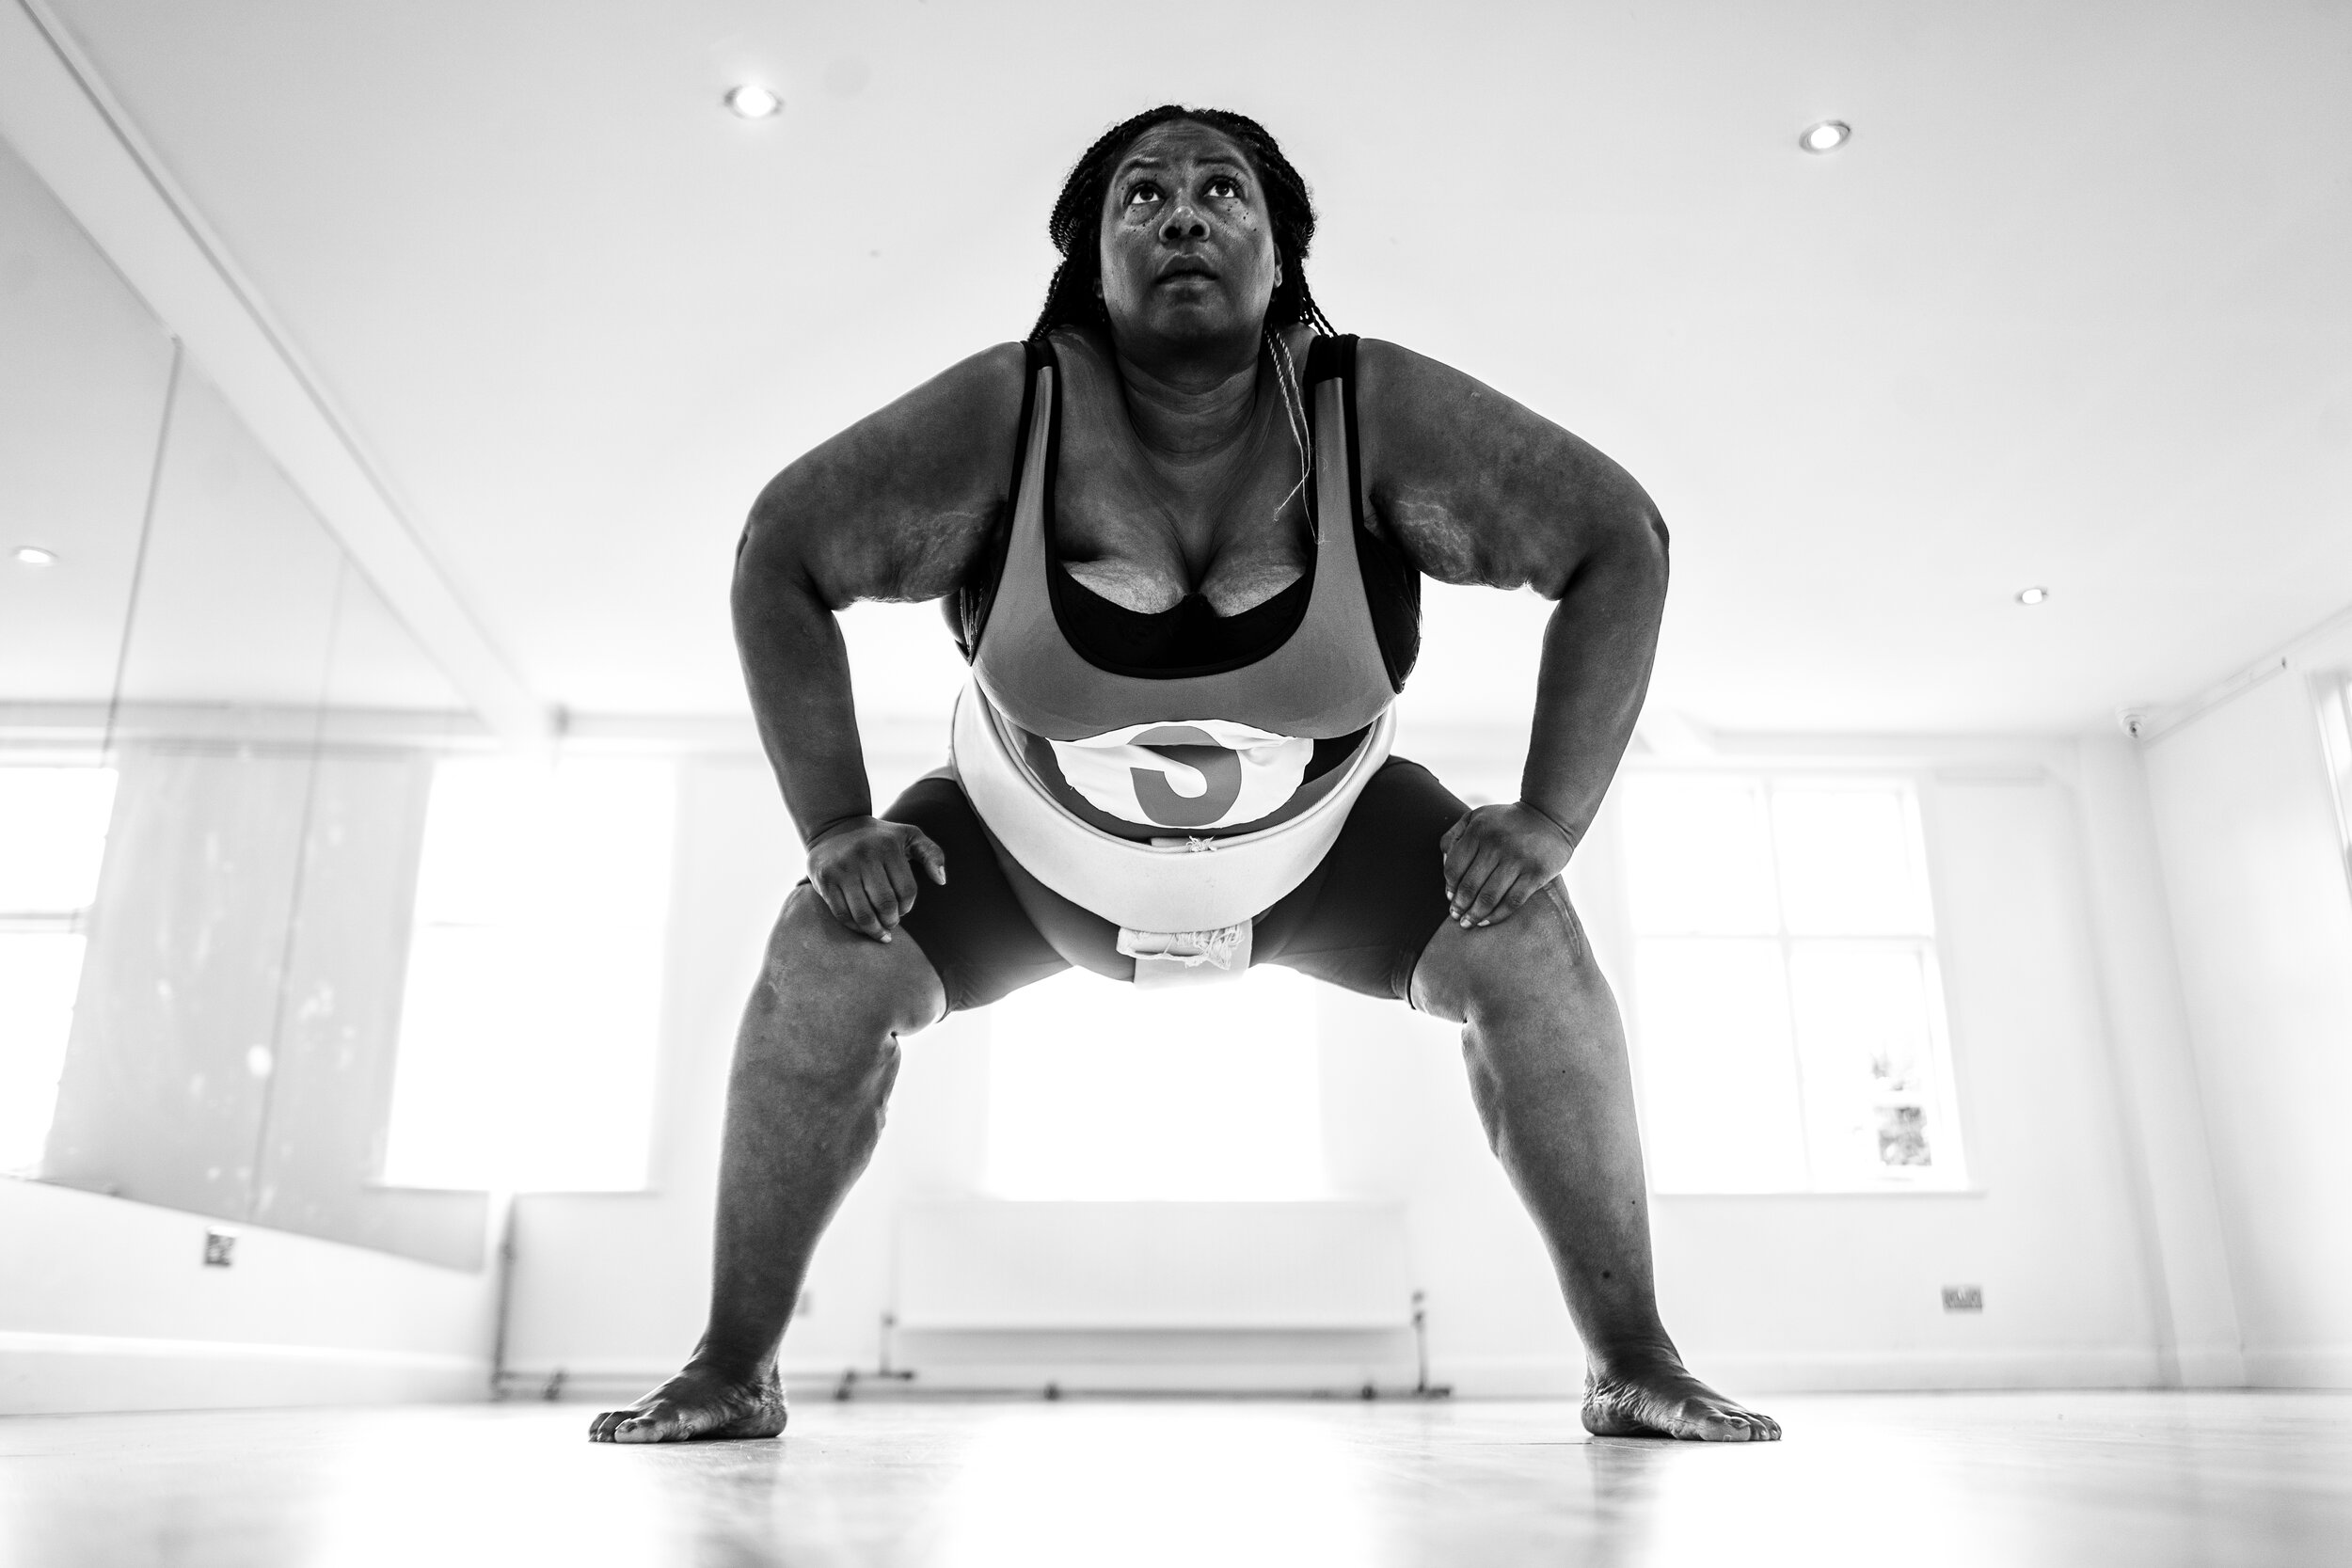 Sharran: Sumo Wrestler [London, UK]